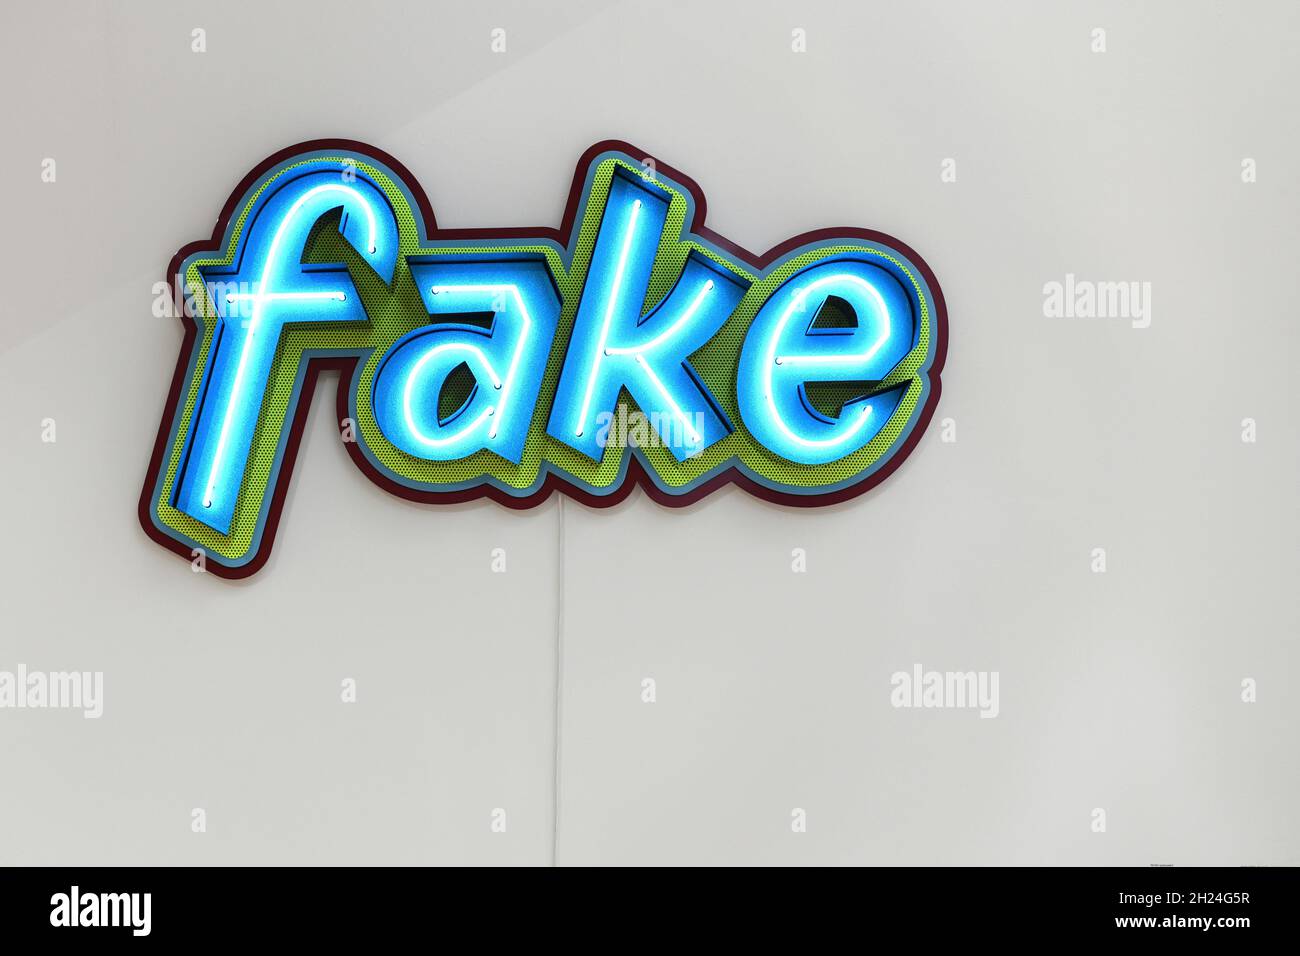 Neonleuchte an einer Wand mit der Aufschrift „Fake“ - Neon light on a wall that reads 'Fake' Stock Photo